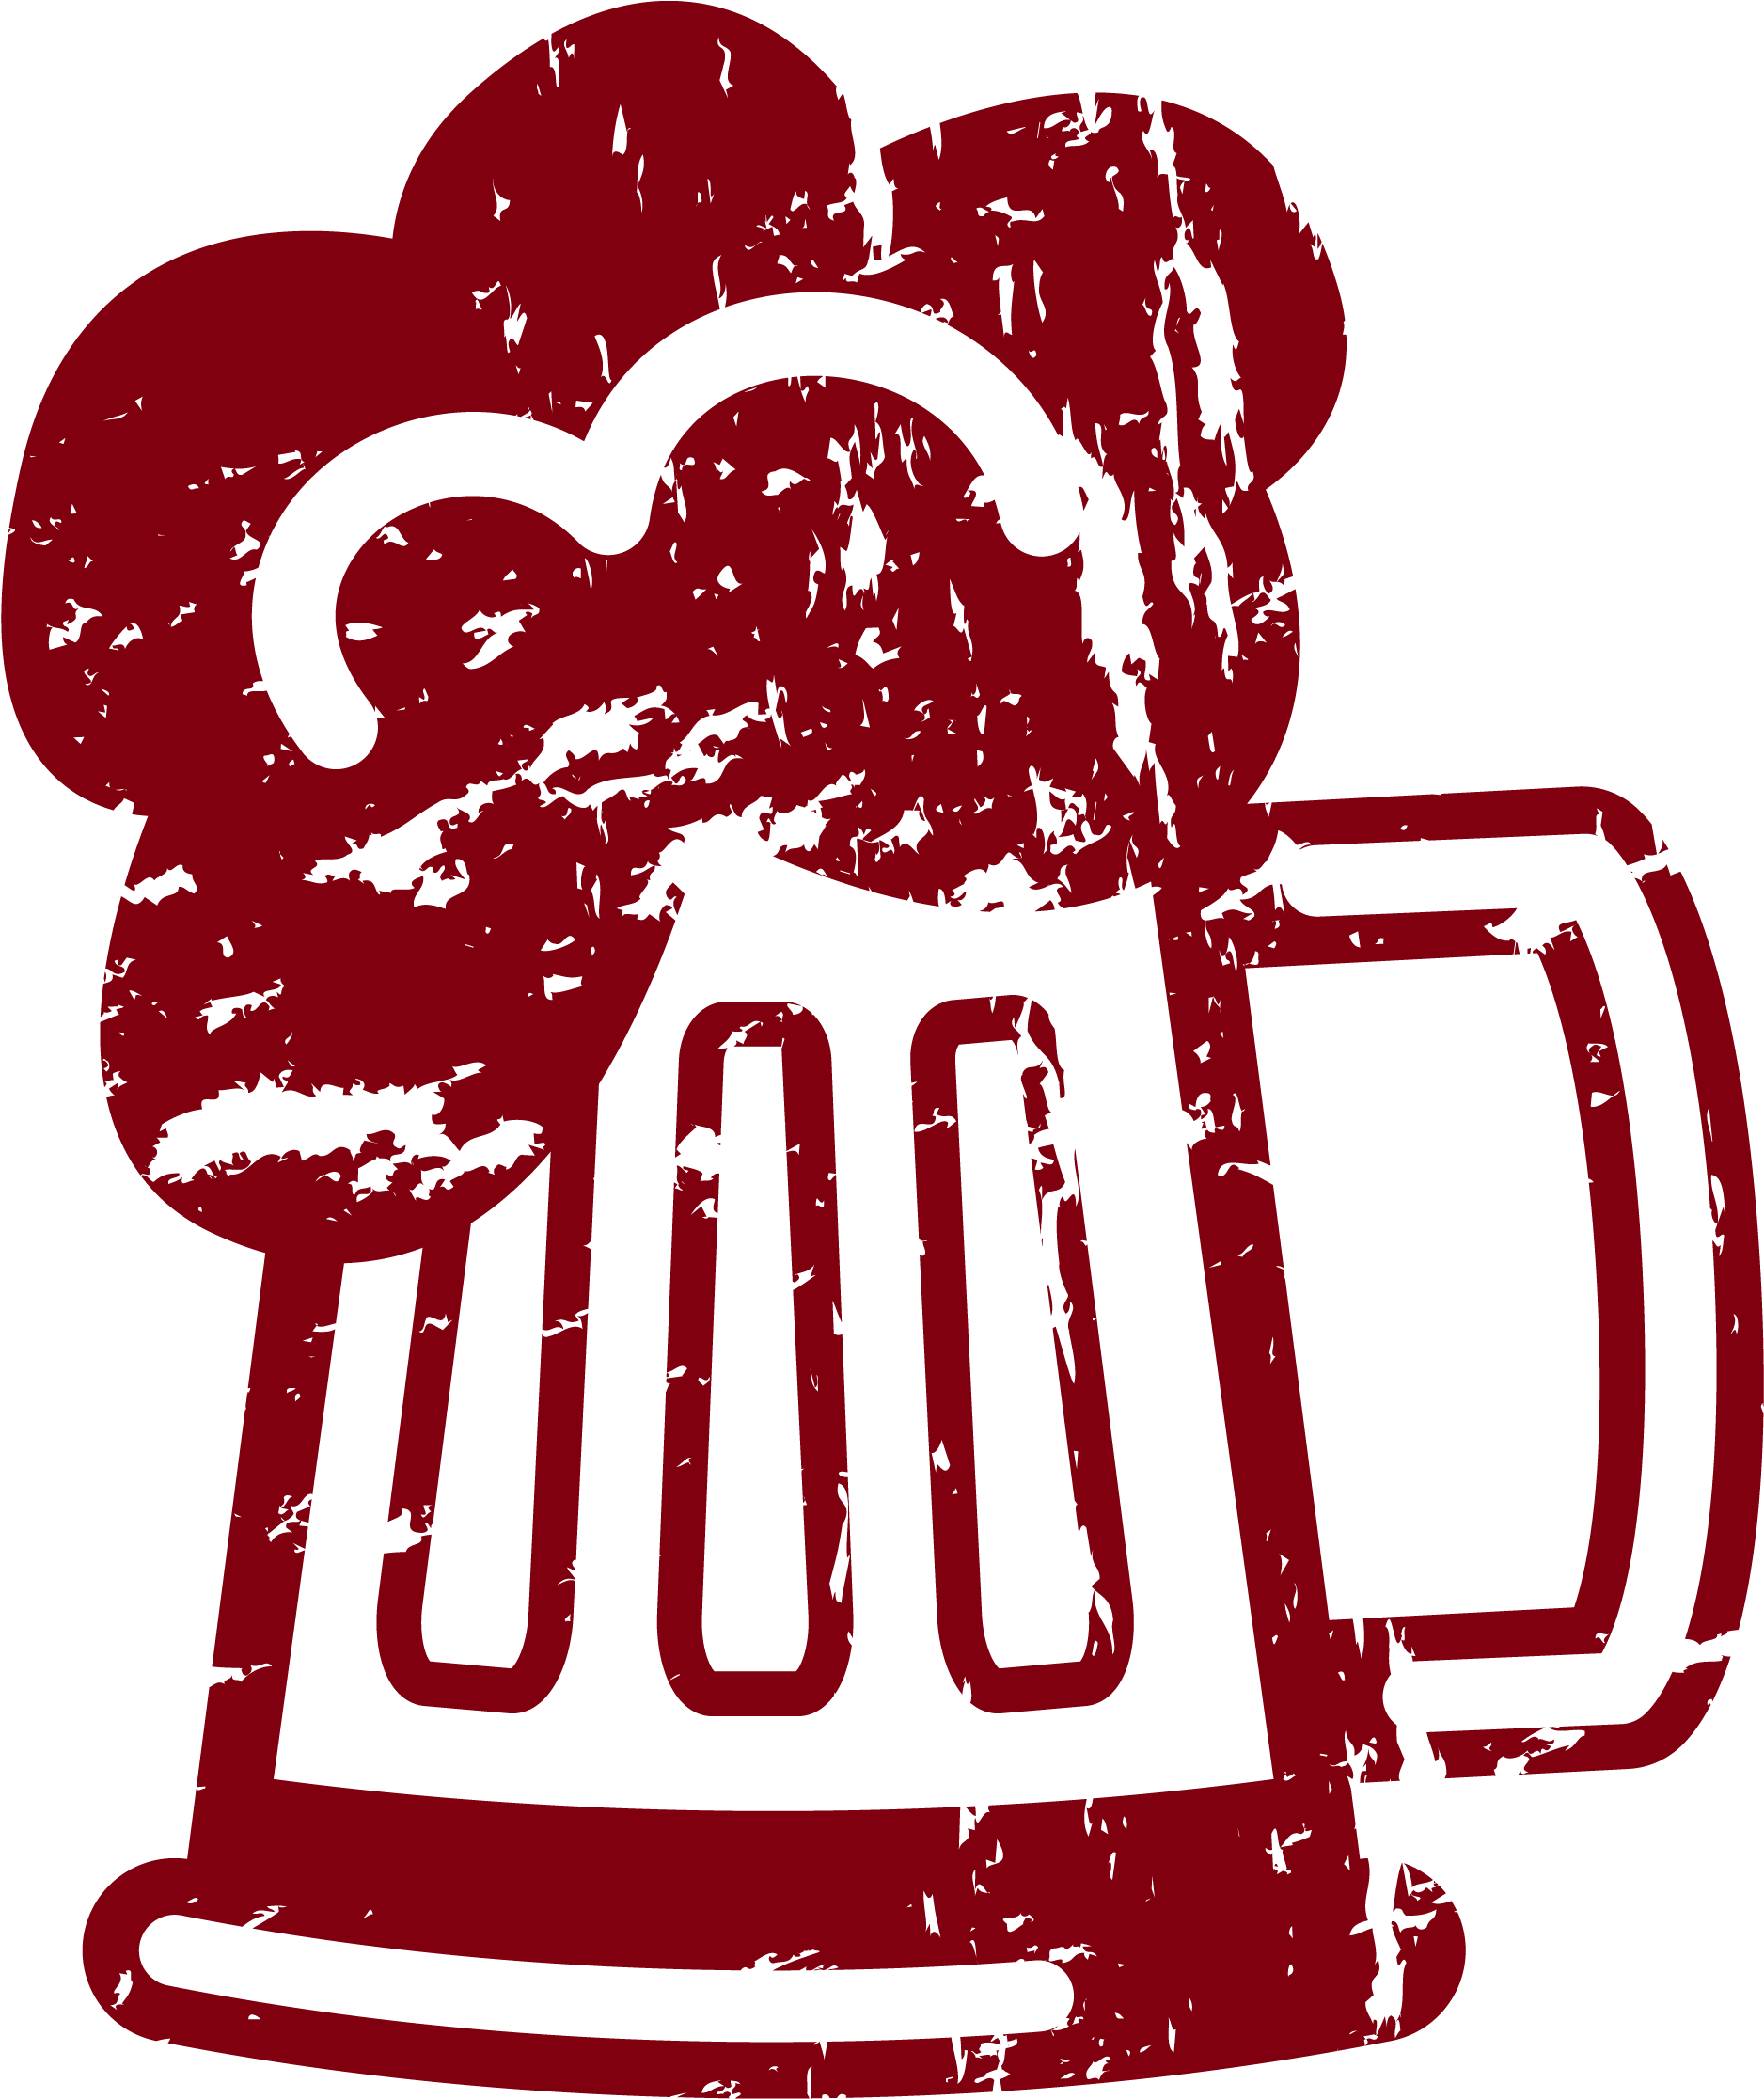 Beer Text With Cartoon Beer Mug B4000 06 - Illustration (4000x4000)